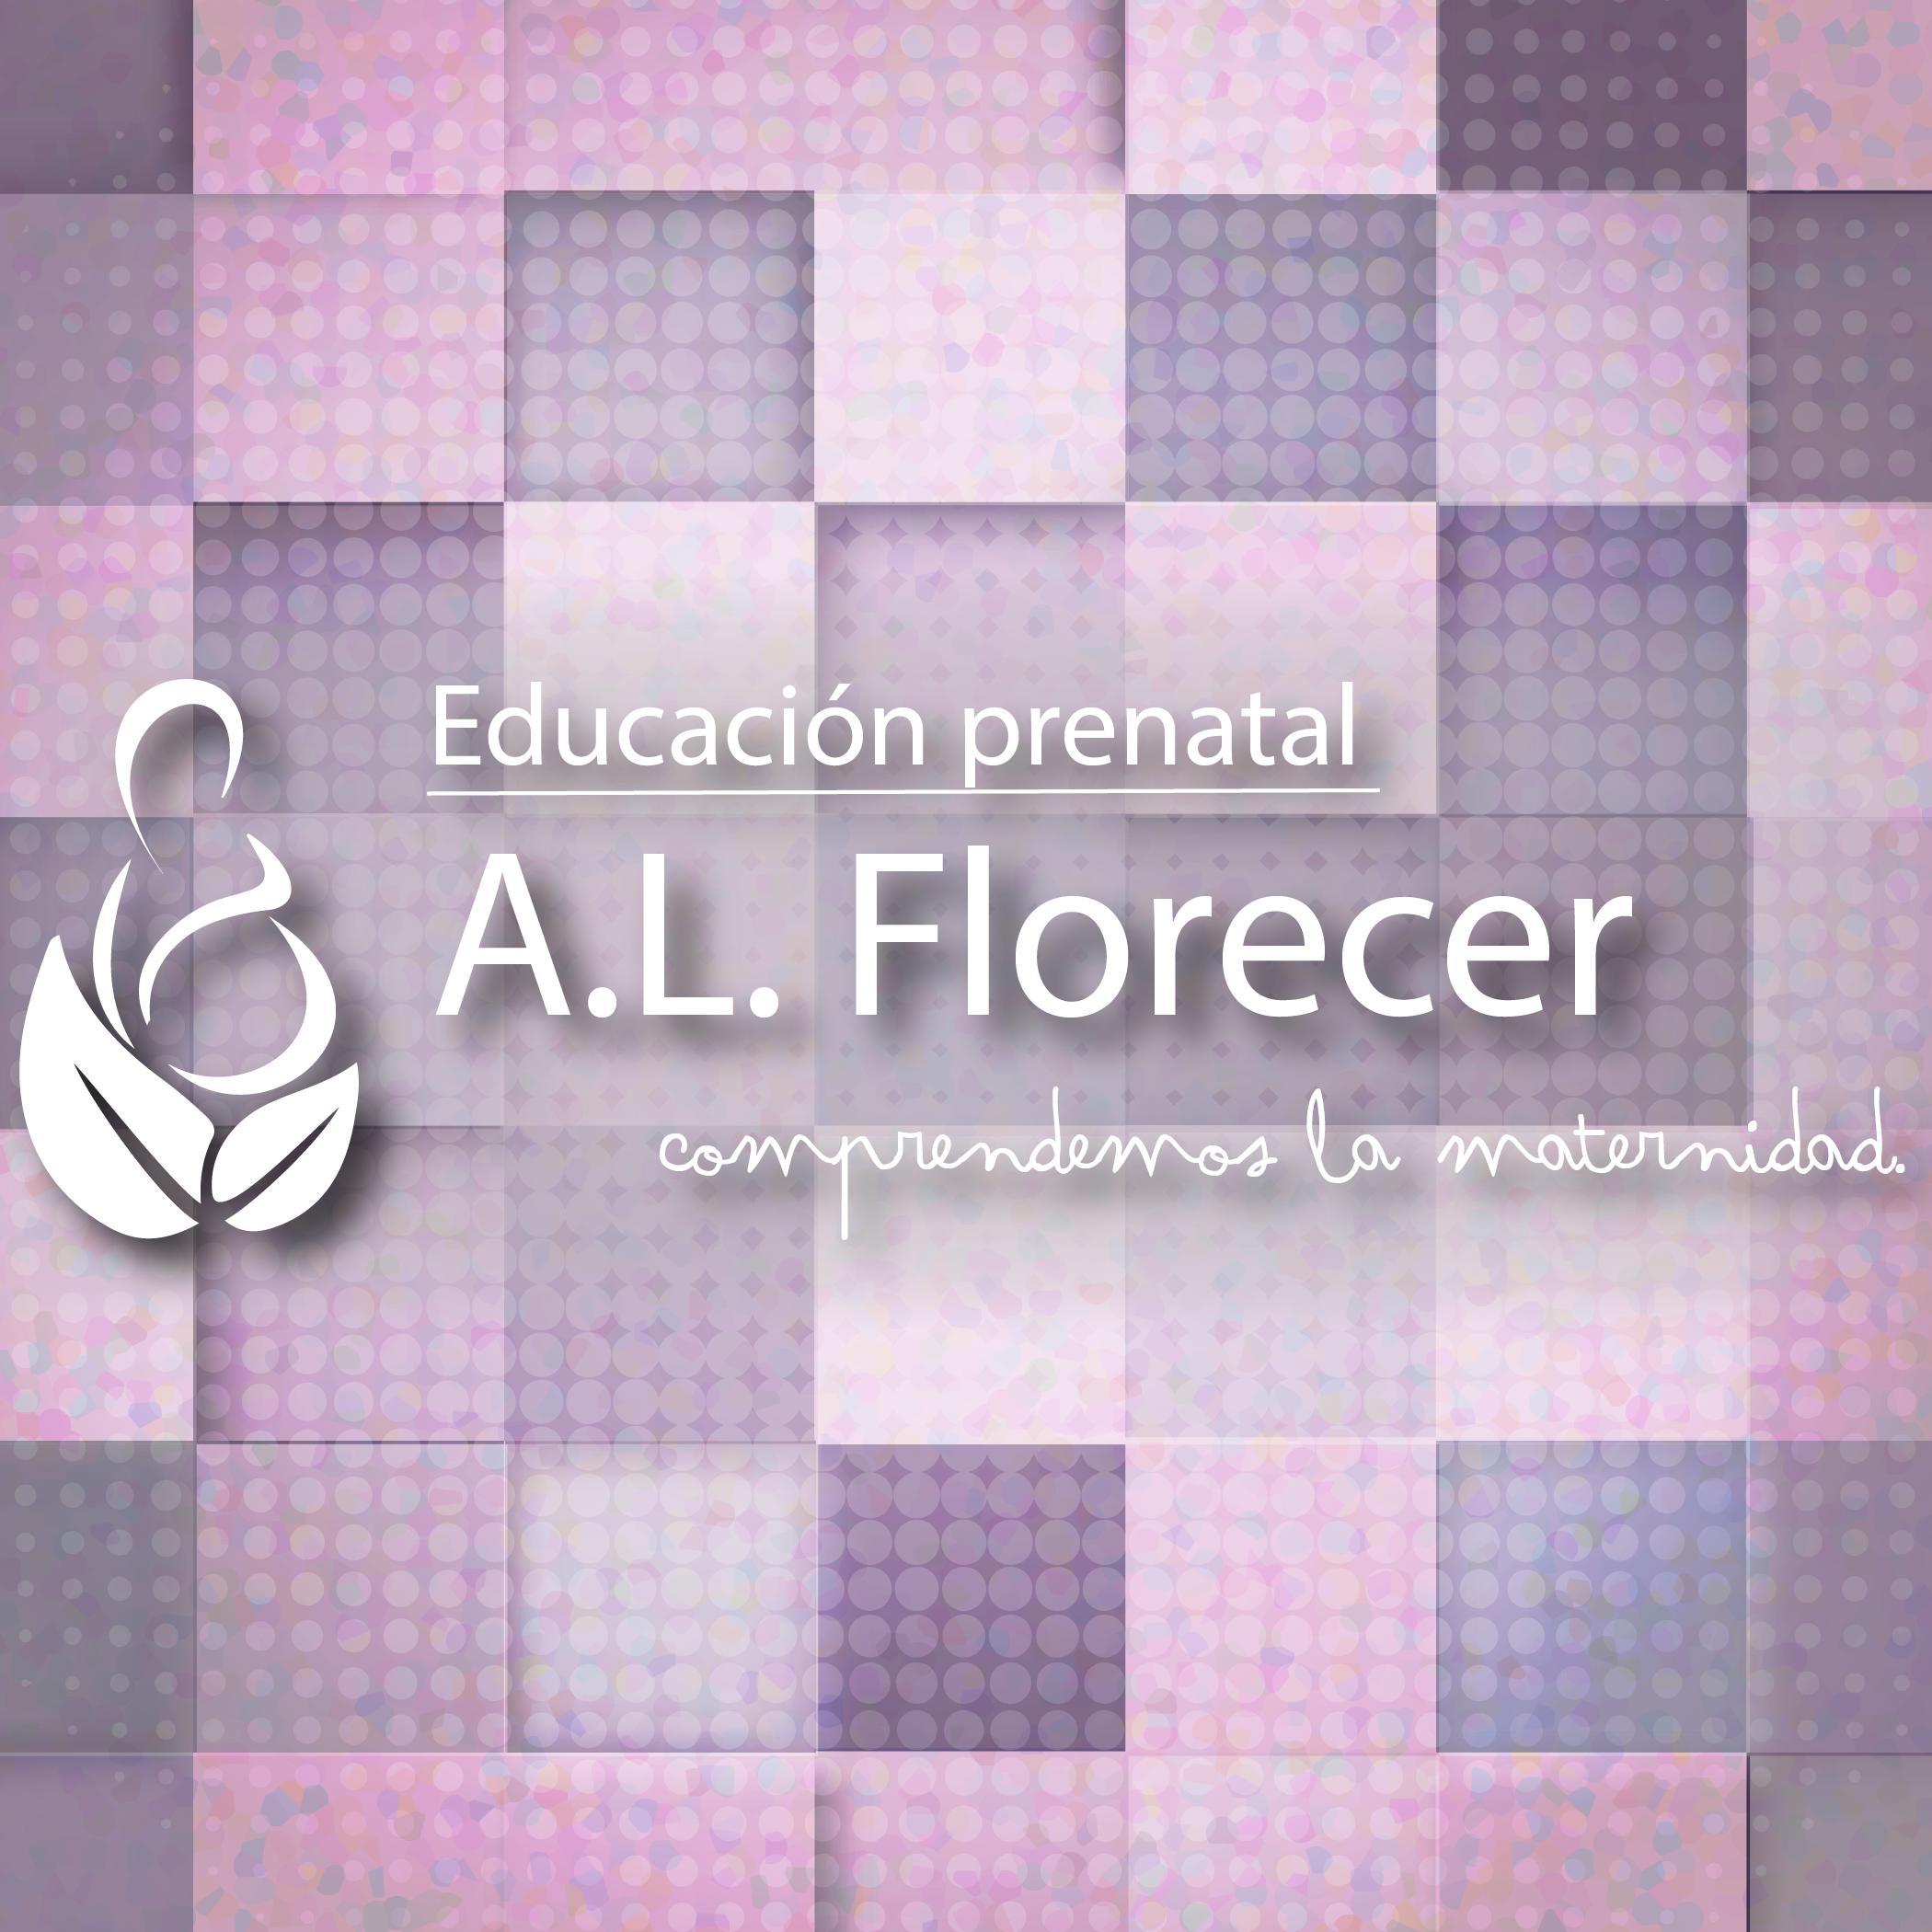 A. L. Florecer, educación prenatal. cree en el poder de las madres y que el futuro de nuestros hijos se forja desde la gestación. alflorecer@gmail.com